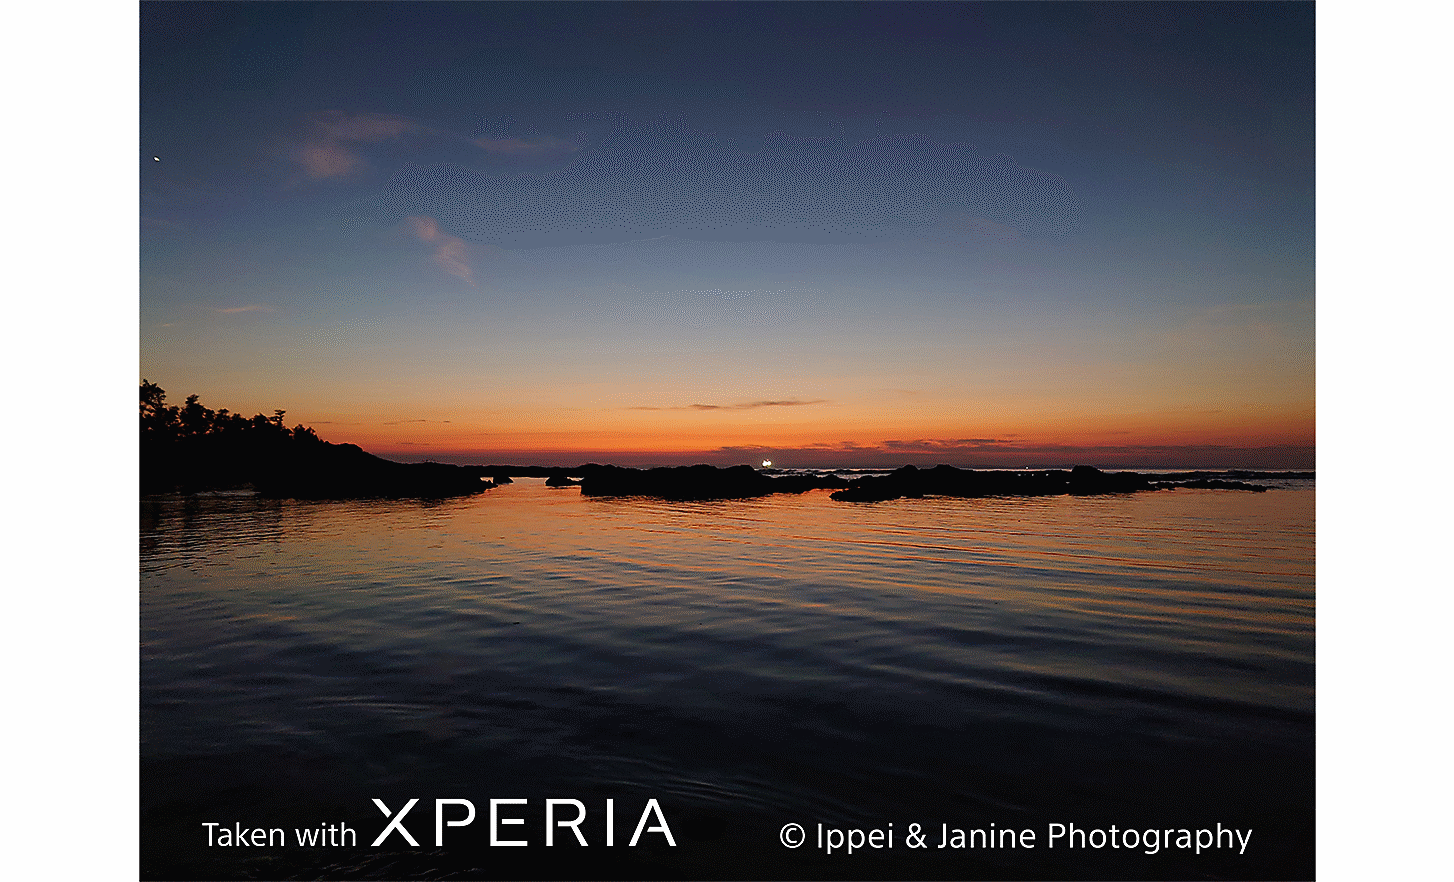 Priveliște la apus de soare, cu o apă mare. Textul: „Realizat cu XPERIA ©Ippei & Janine Photography".